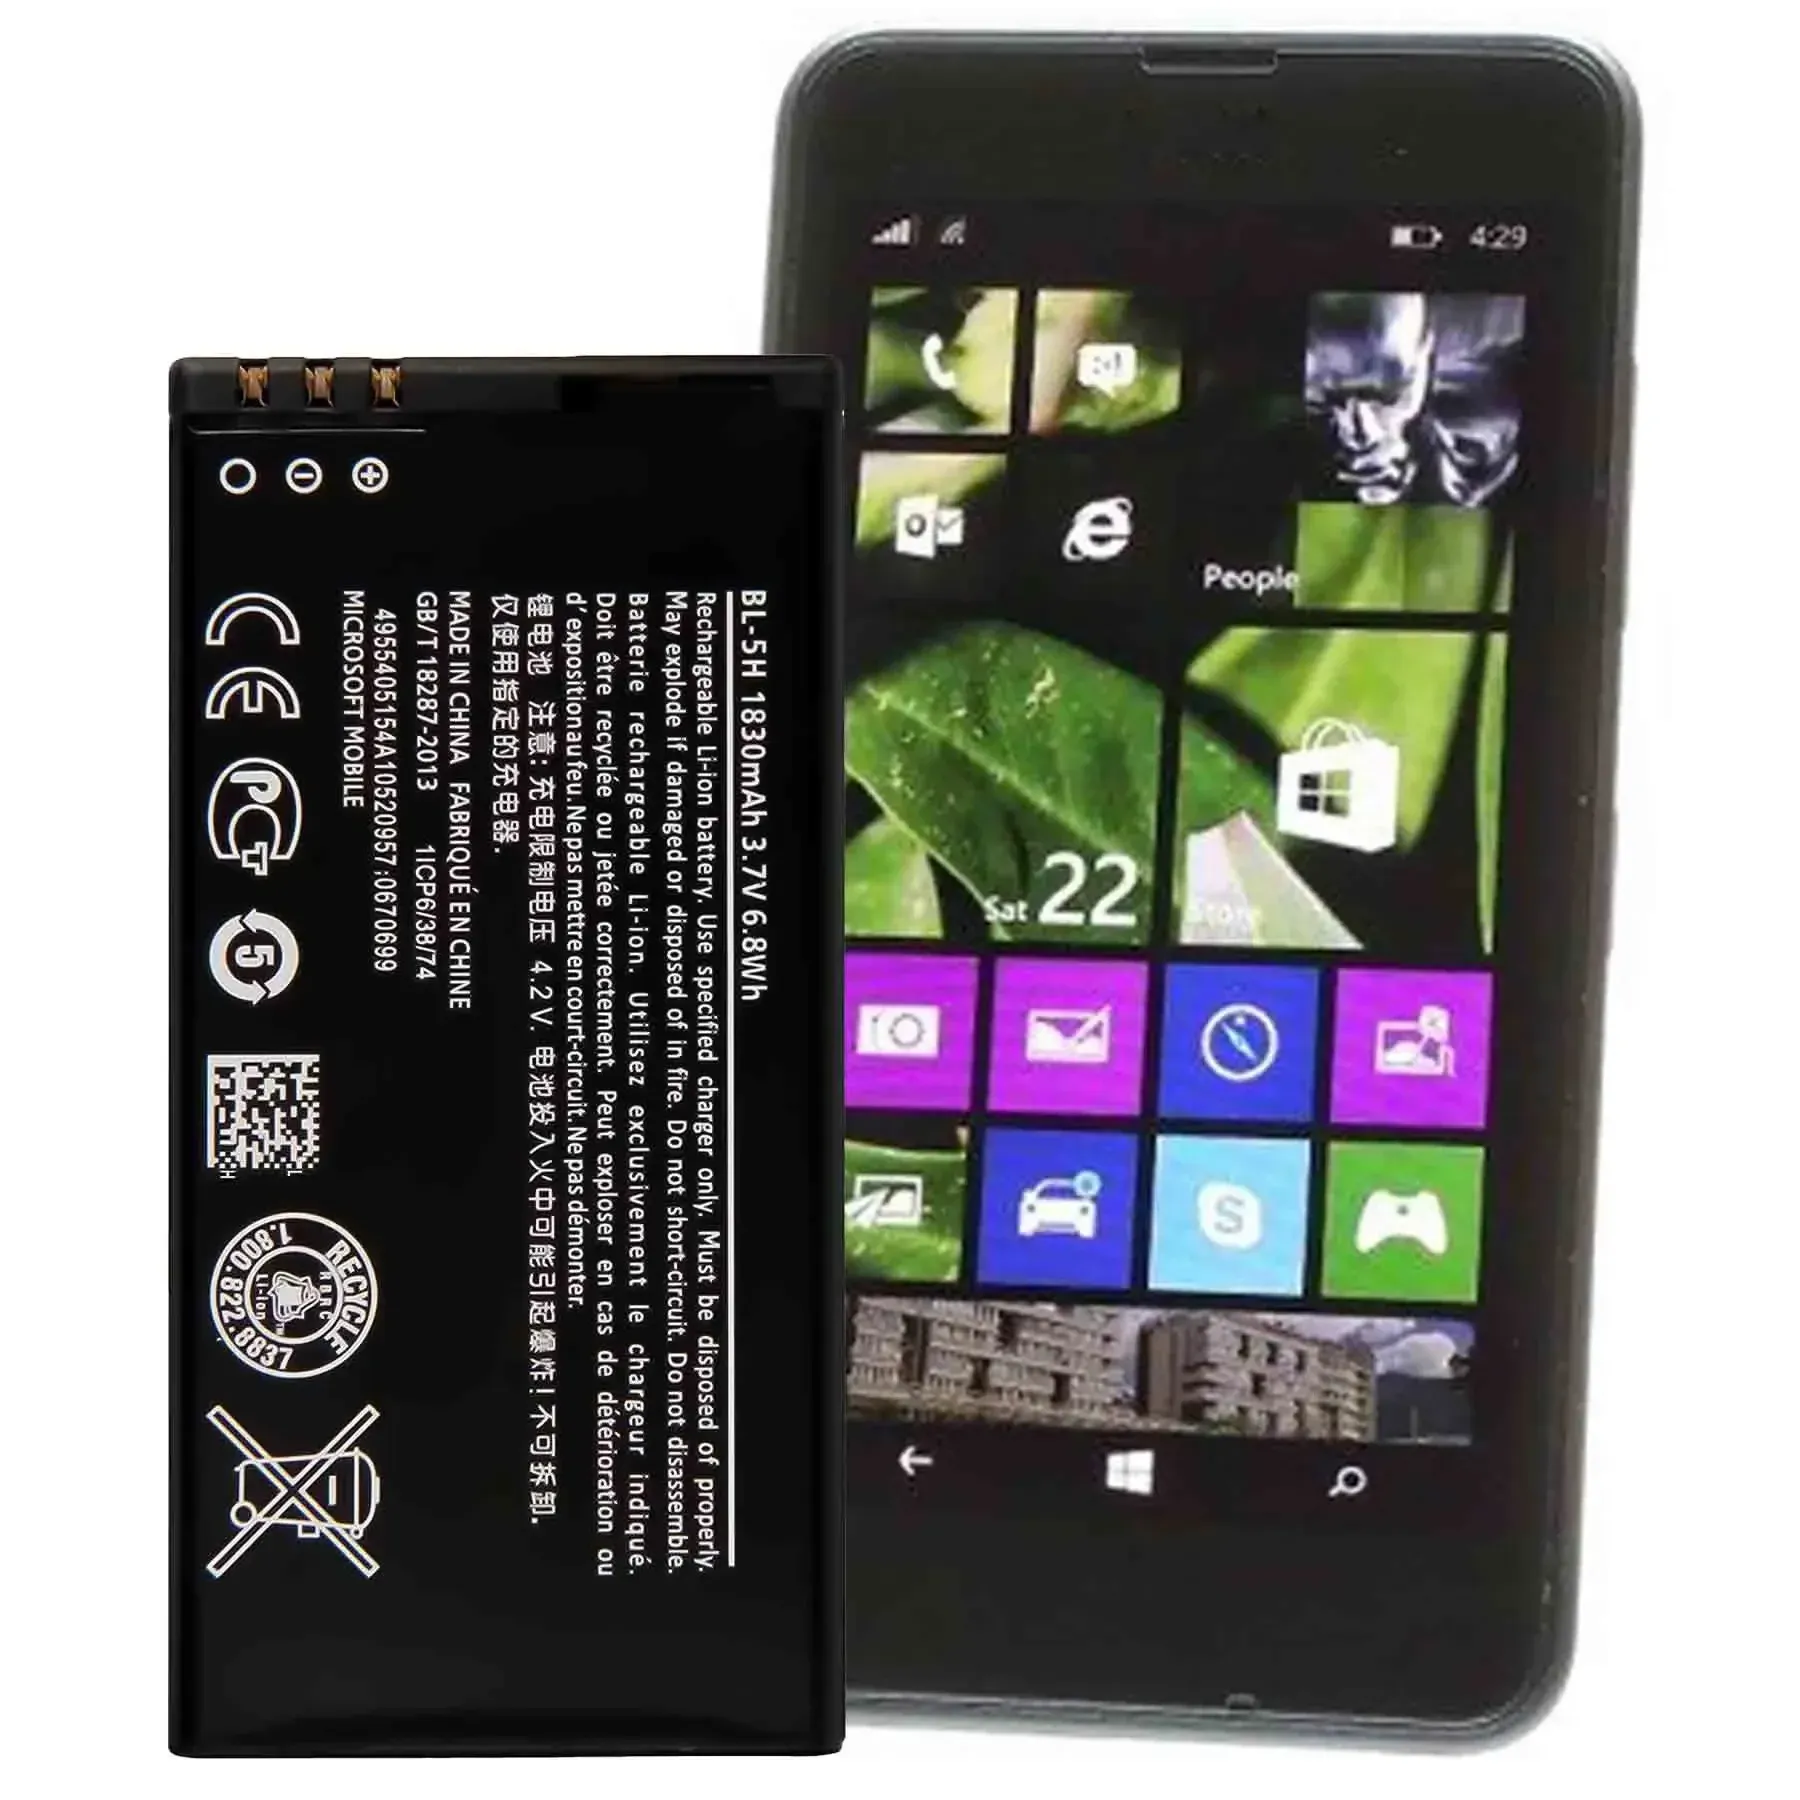 Batterie de remplacement de haute qualité pour Nokia Lumia 630 3G 630 DS 638 635 RM-978 RM-974 RM-975 Batteries de téléphone BL-5H